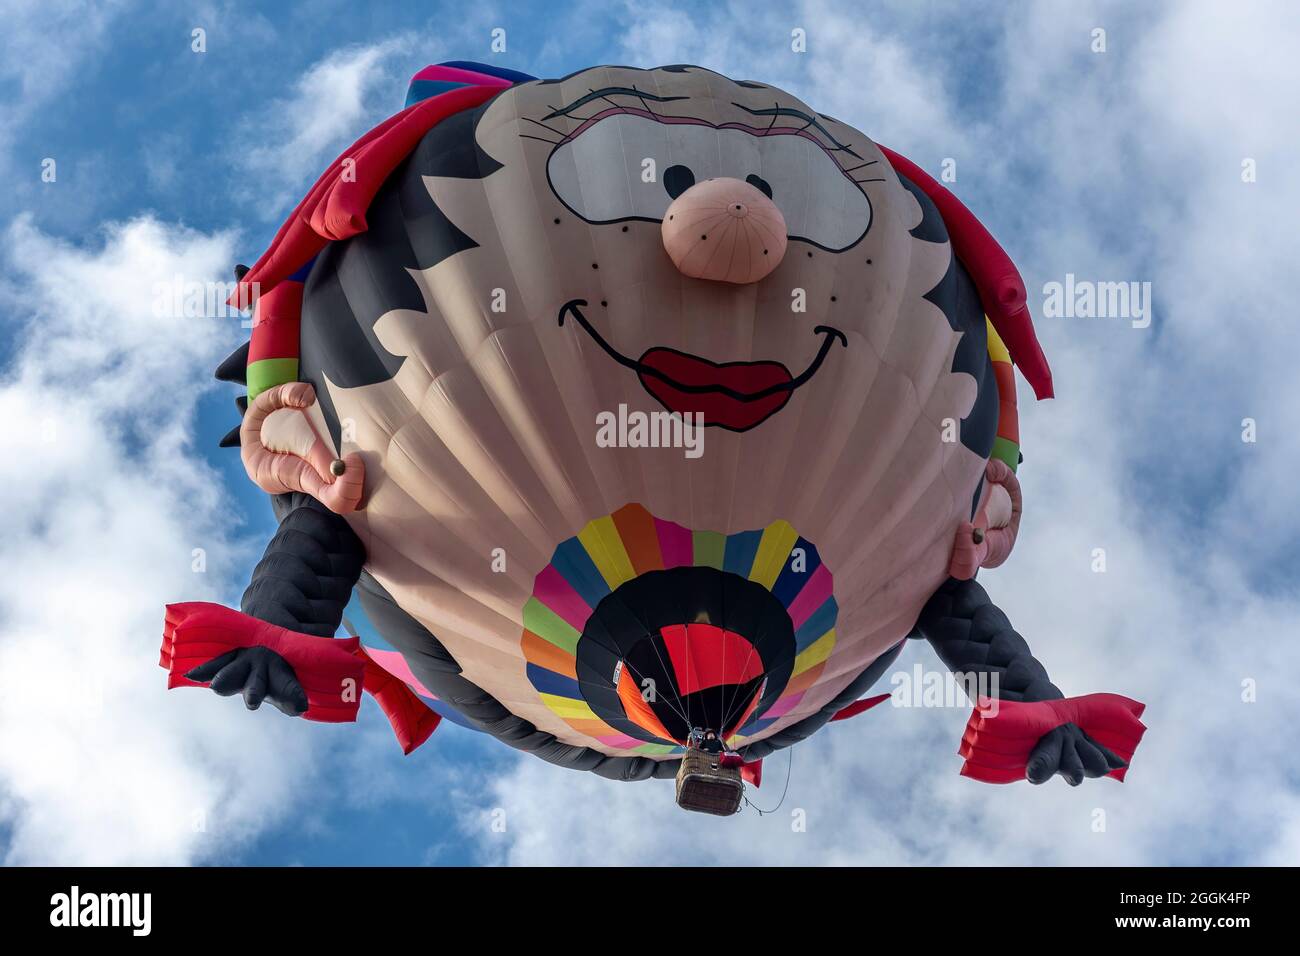 Globo de aire caliente de forma especial 'Oons Wiefke', Albuquerque International Balloon Fiesta, Albuquerque, New Mexico USA Foto de stock